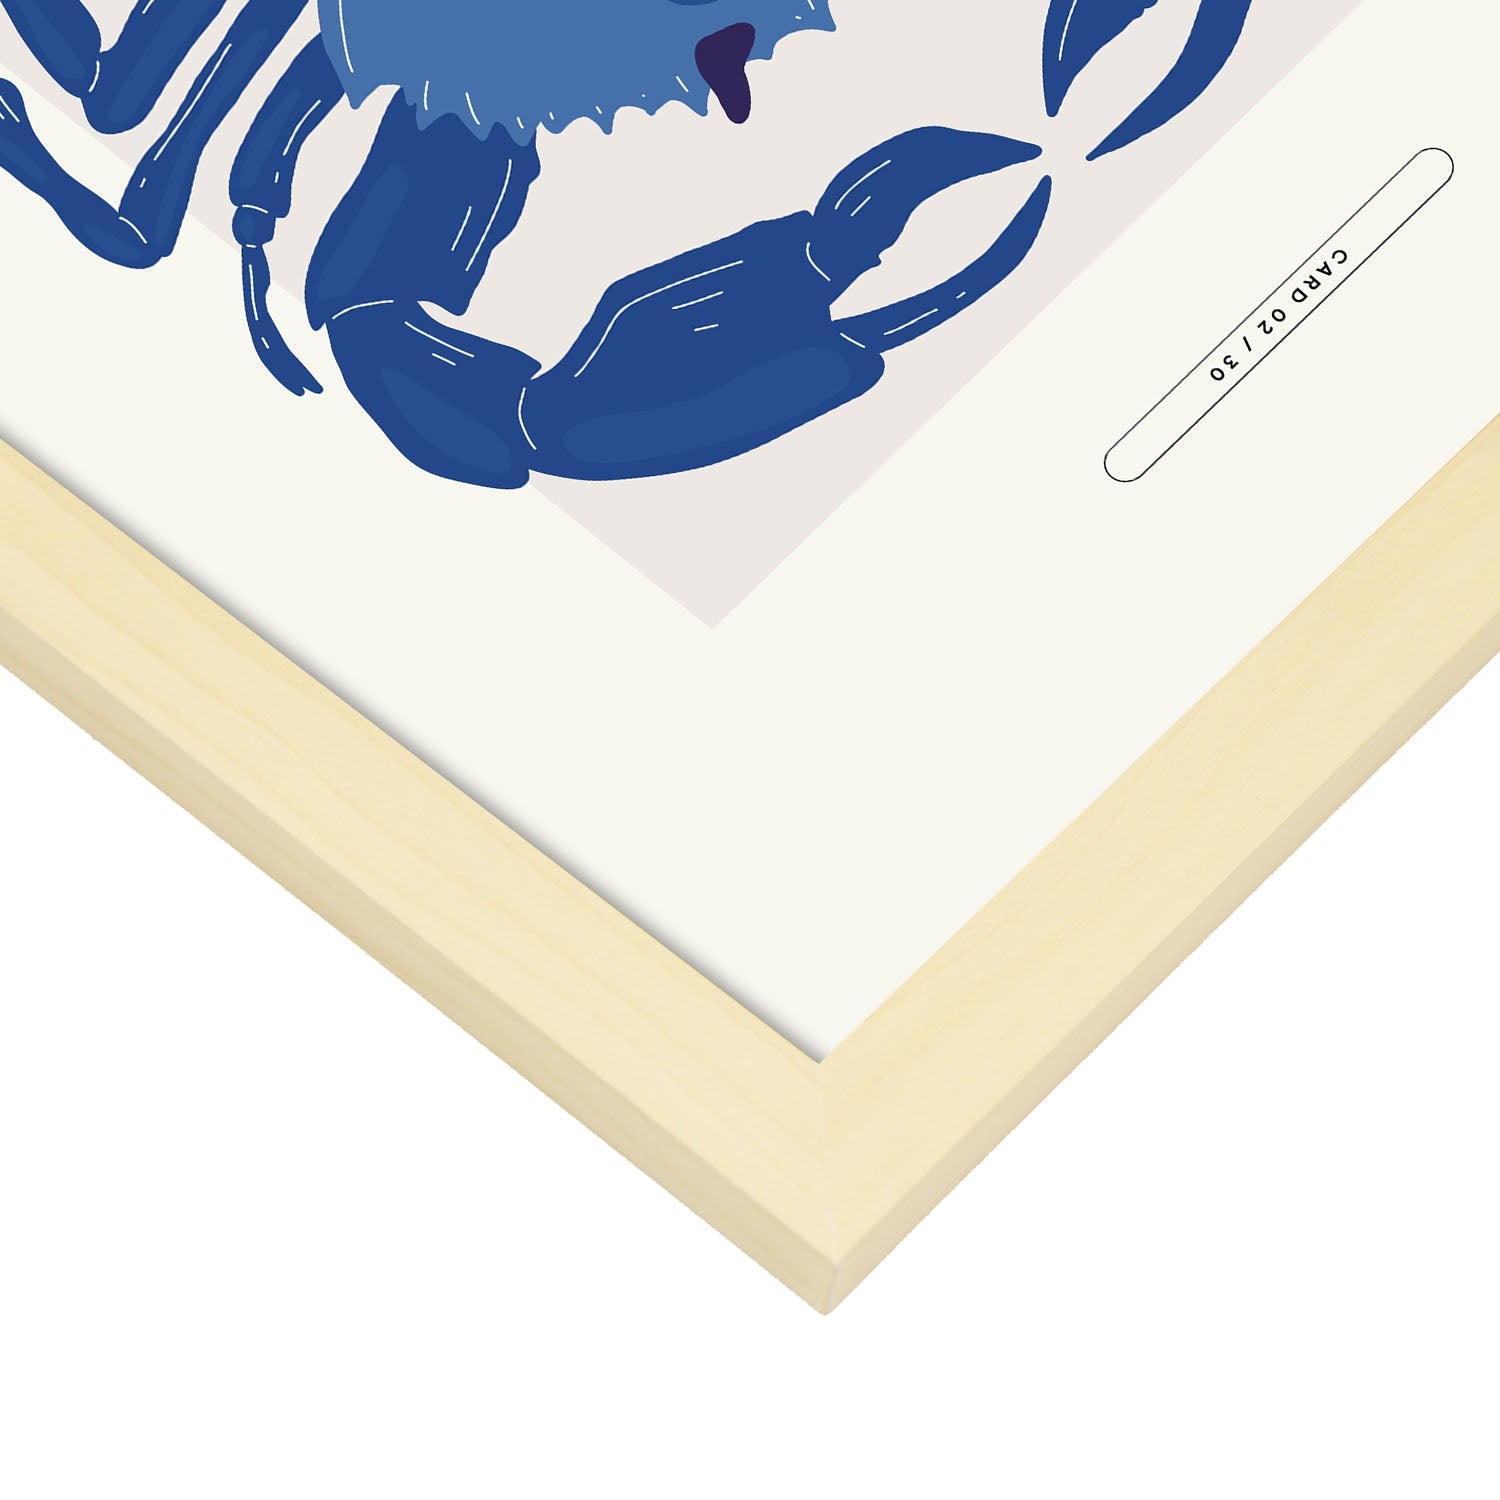 Blue Crab-Artwork-Nacnic-Nacnic Estudio SL